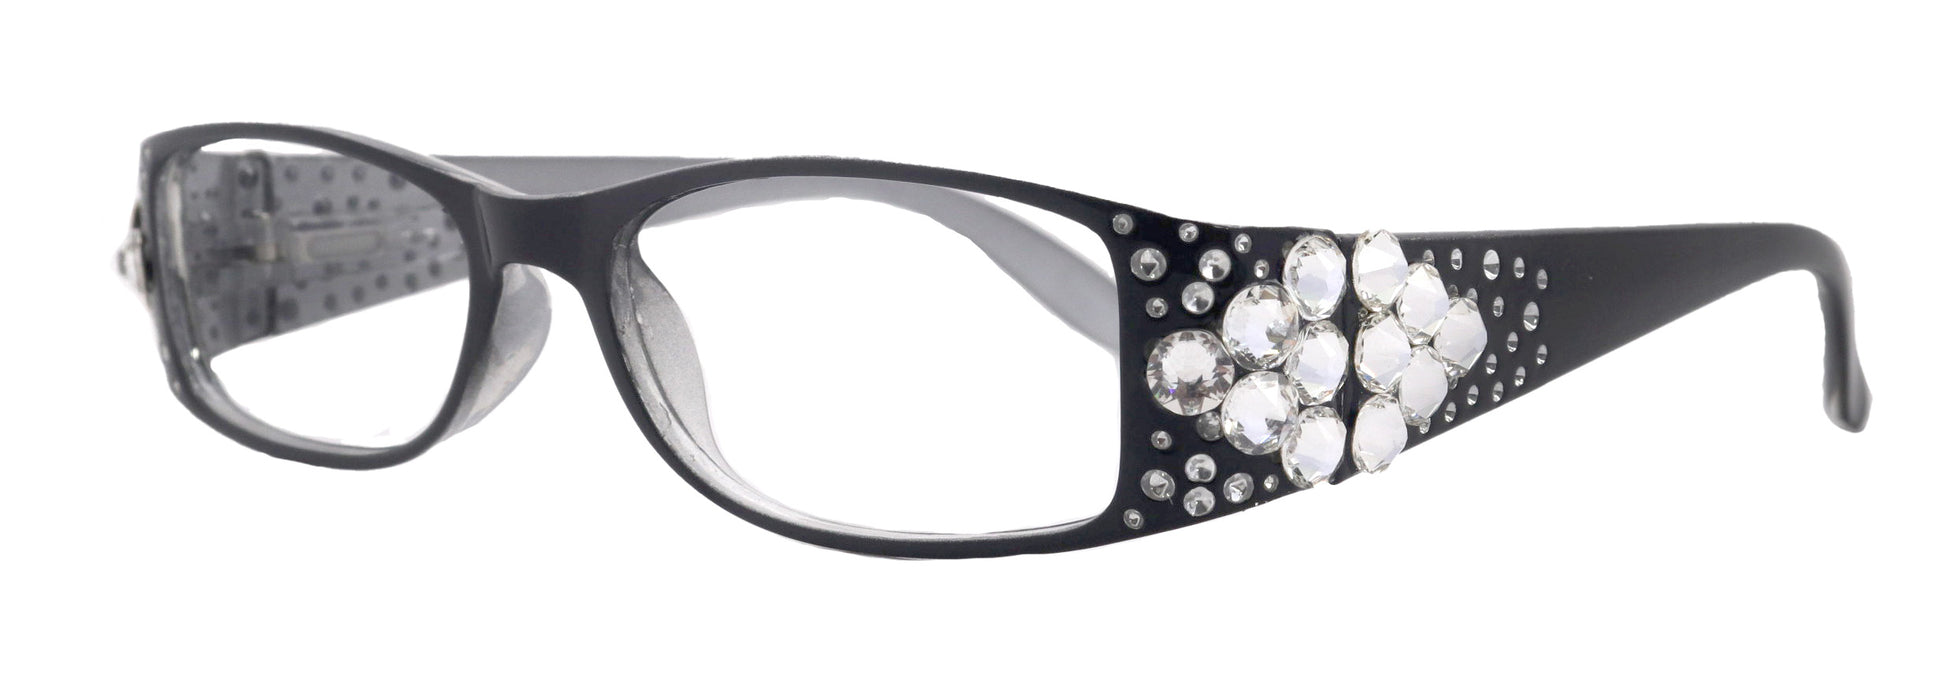 Merkel, la forma de cristal de diamante, gafas de lectura brillantes para mujer, adornadas con cristales europeos auténticos transparentes +1,50 a +3. Quinta Avenida de Nueva York.